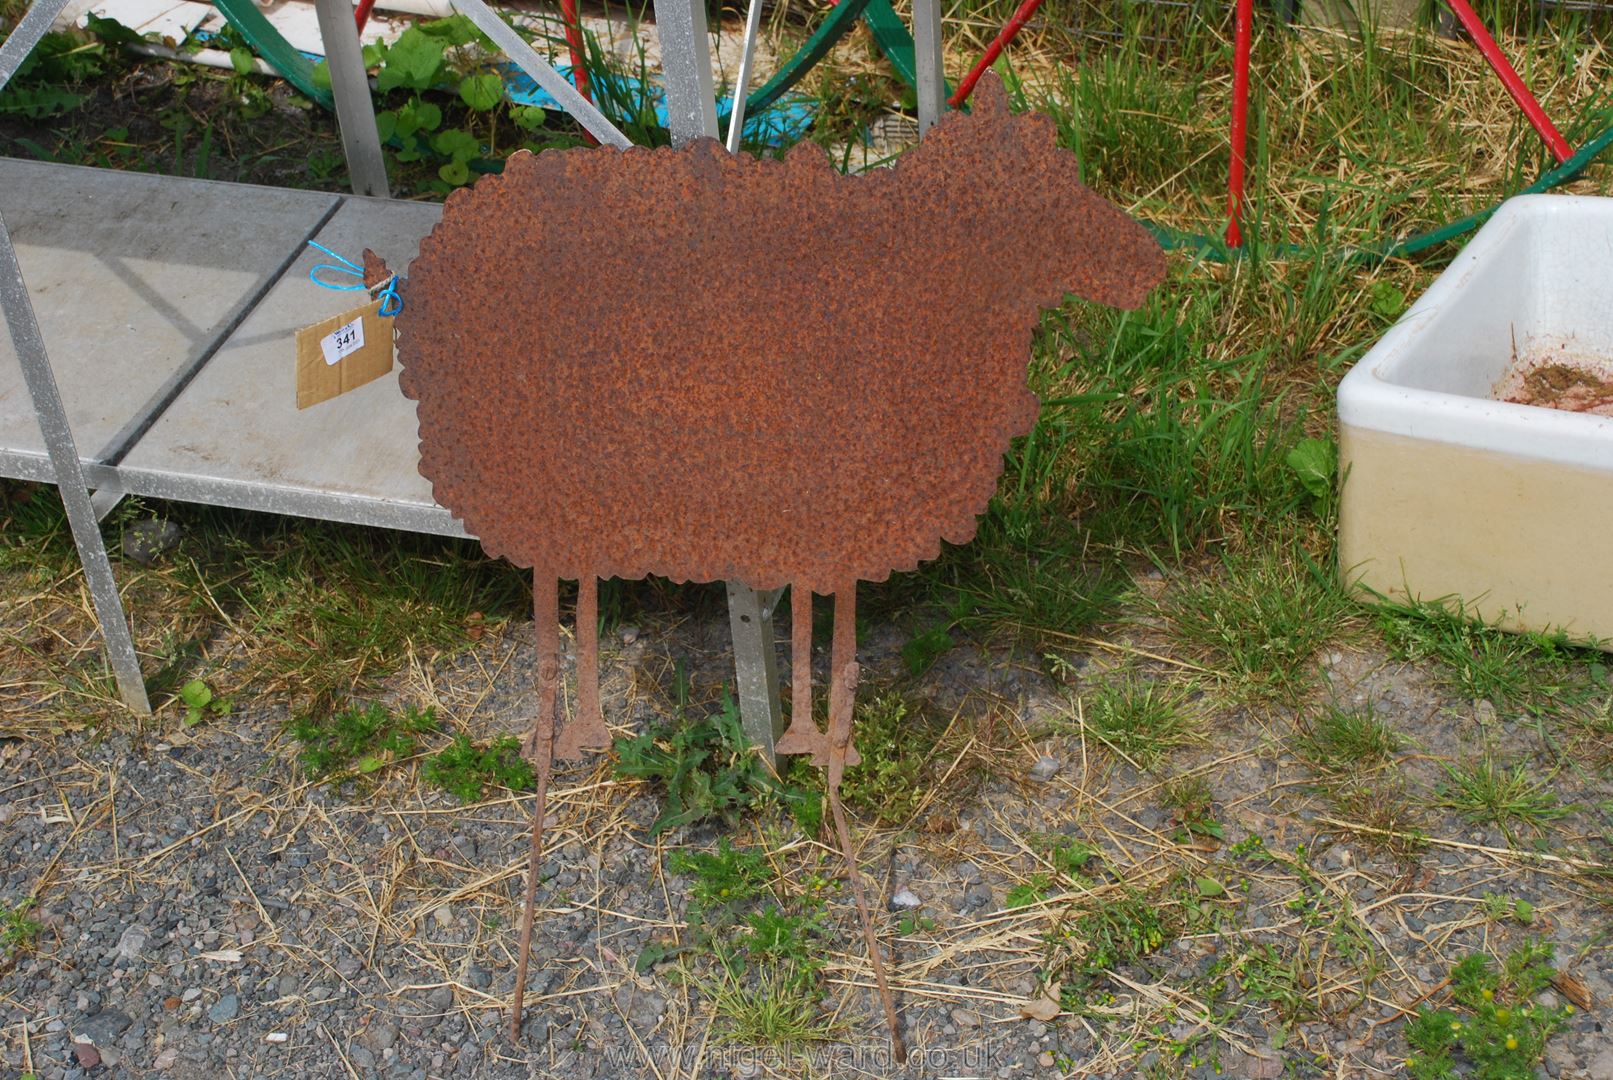 A metal sheep figure garden ornament.